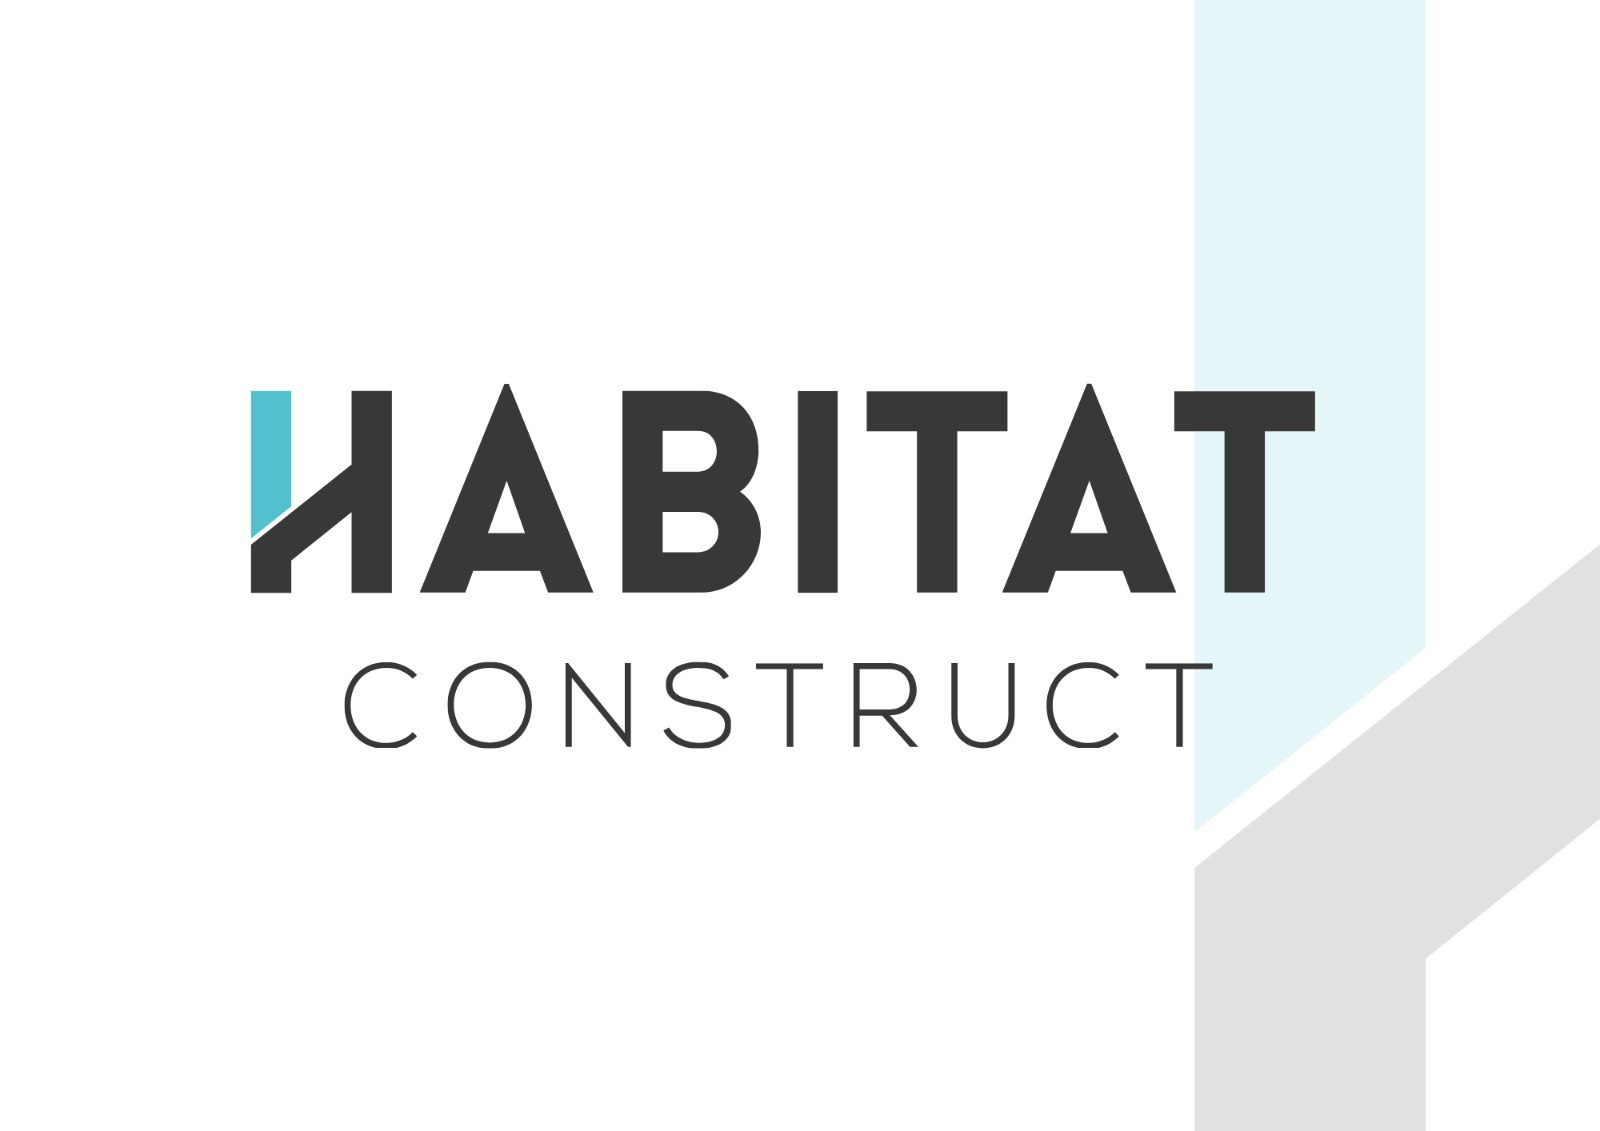 Habitat construct